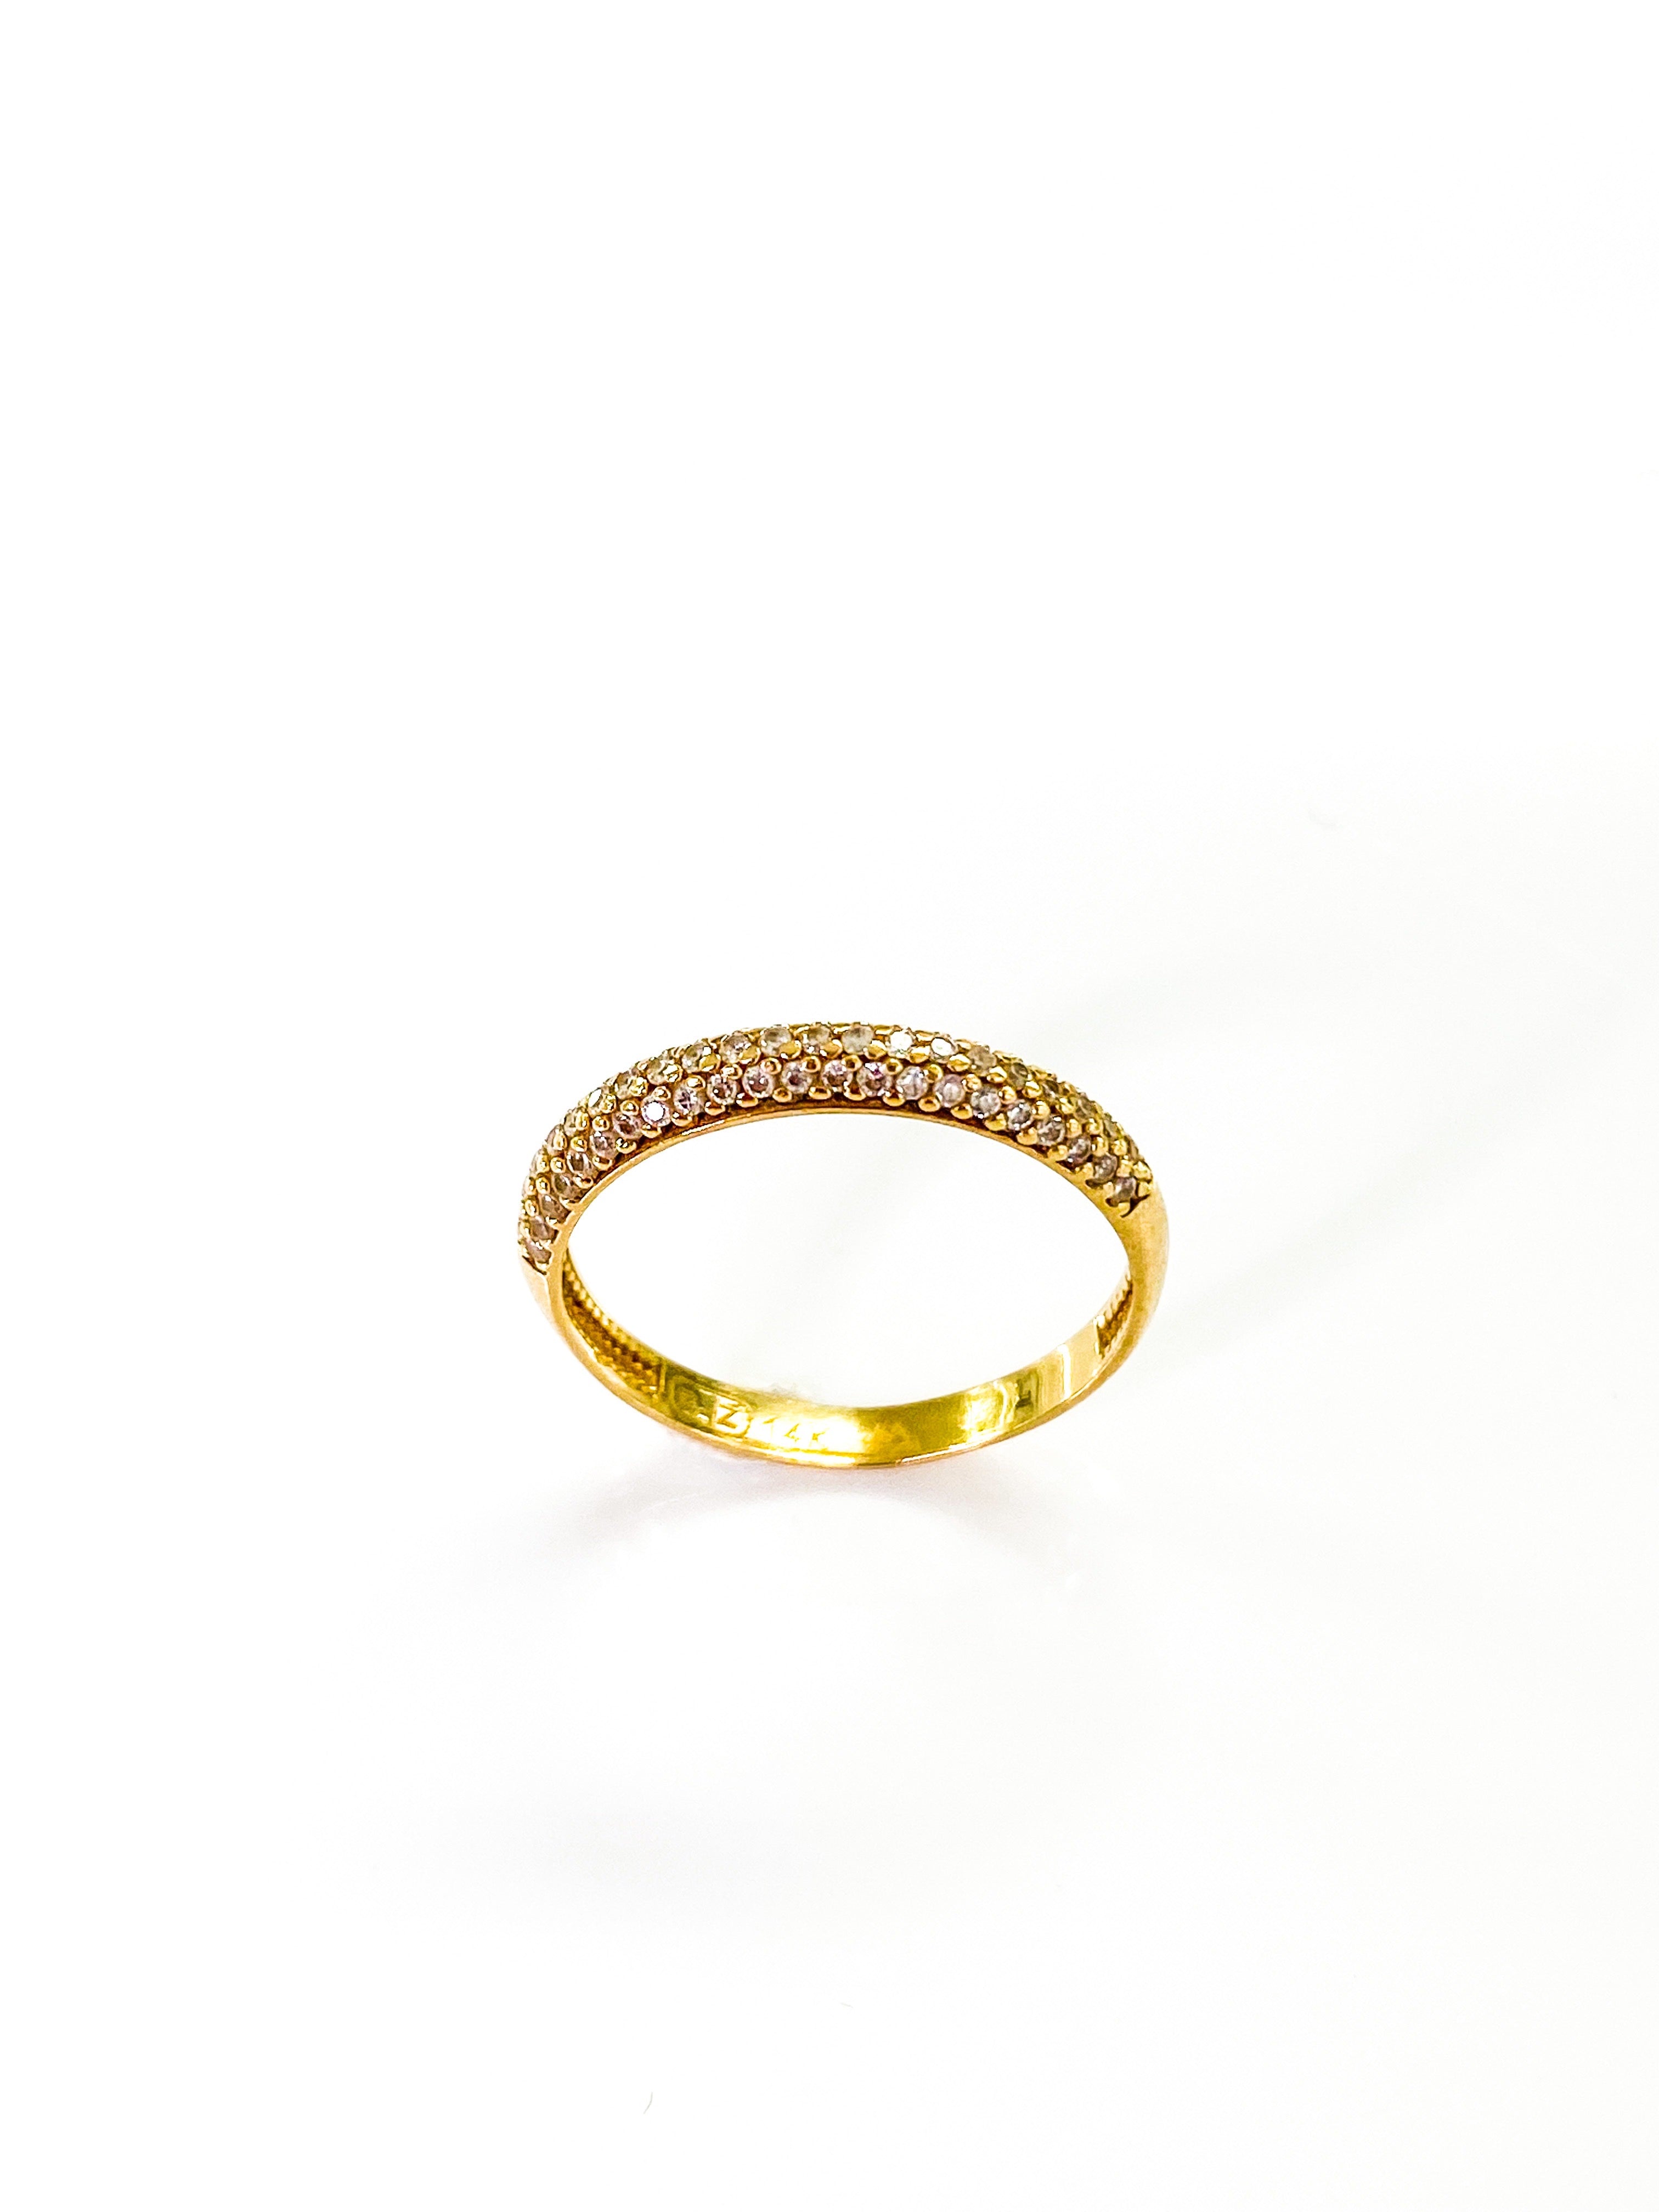 טבעת זהב 14 קארט חצי עיגול משובץ שורות זירקונים